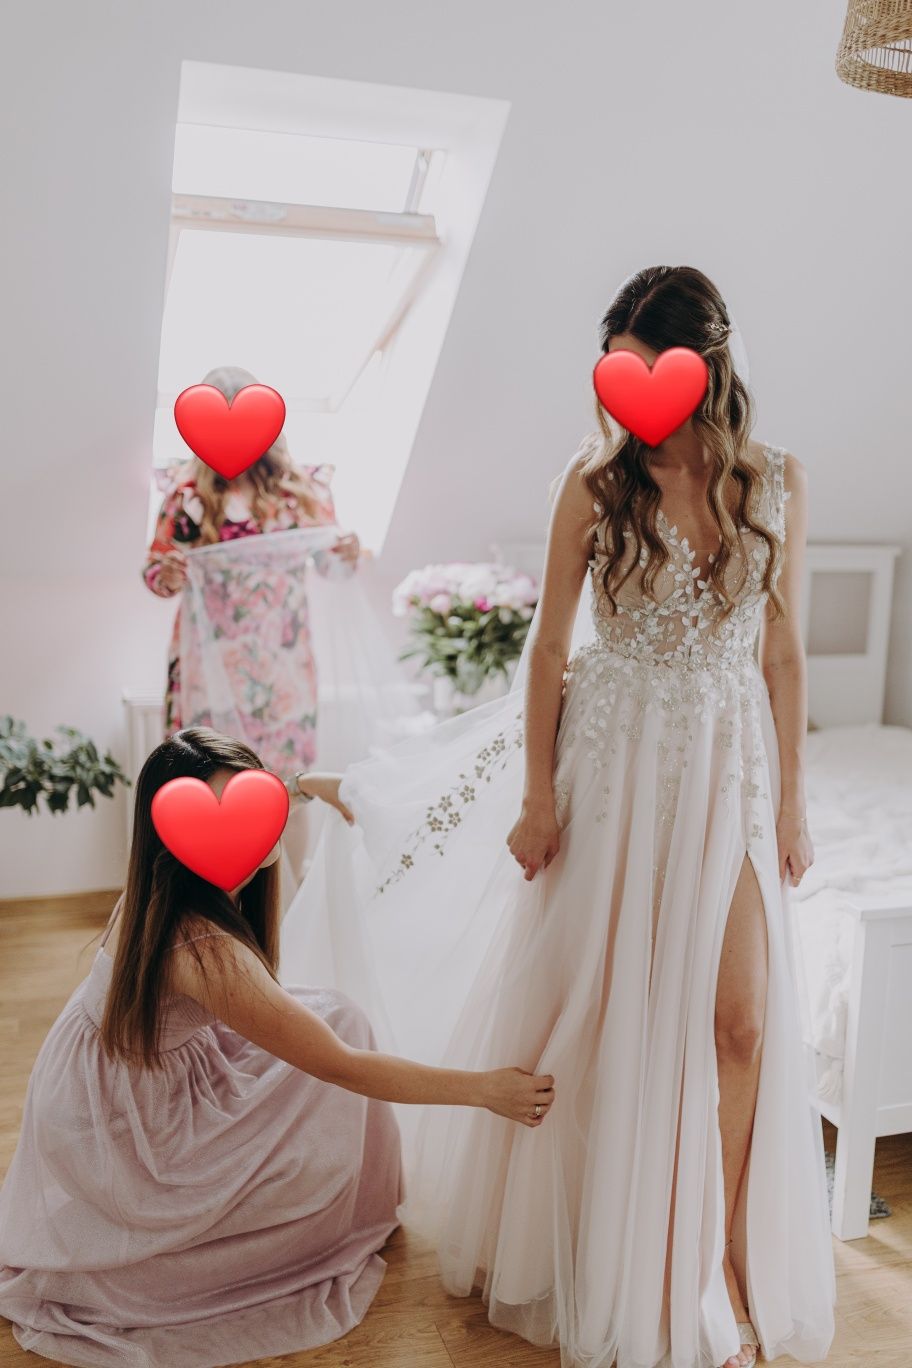 Kremowa suknia ślubna